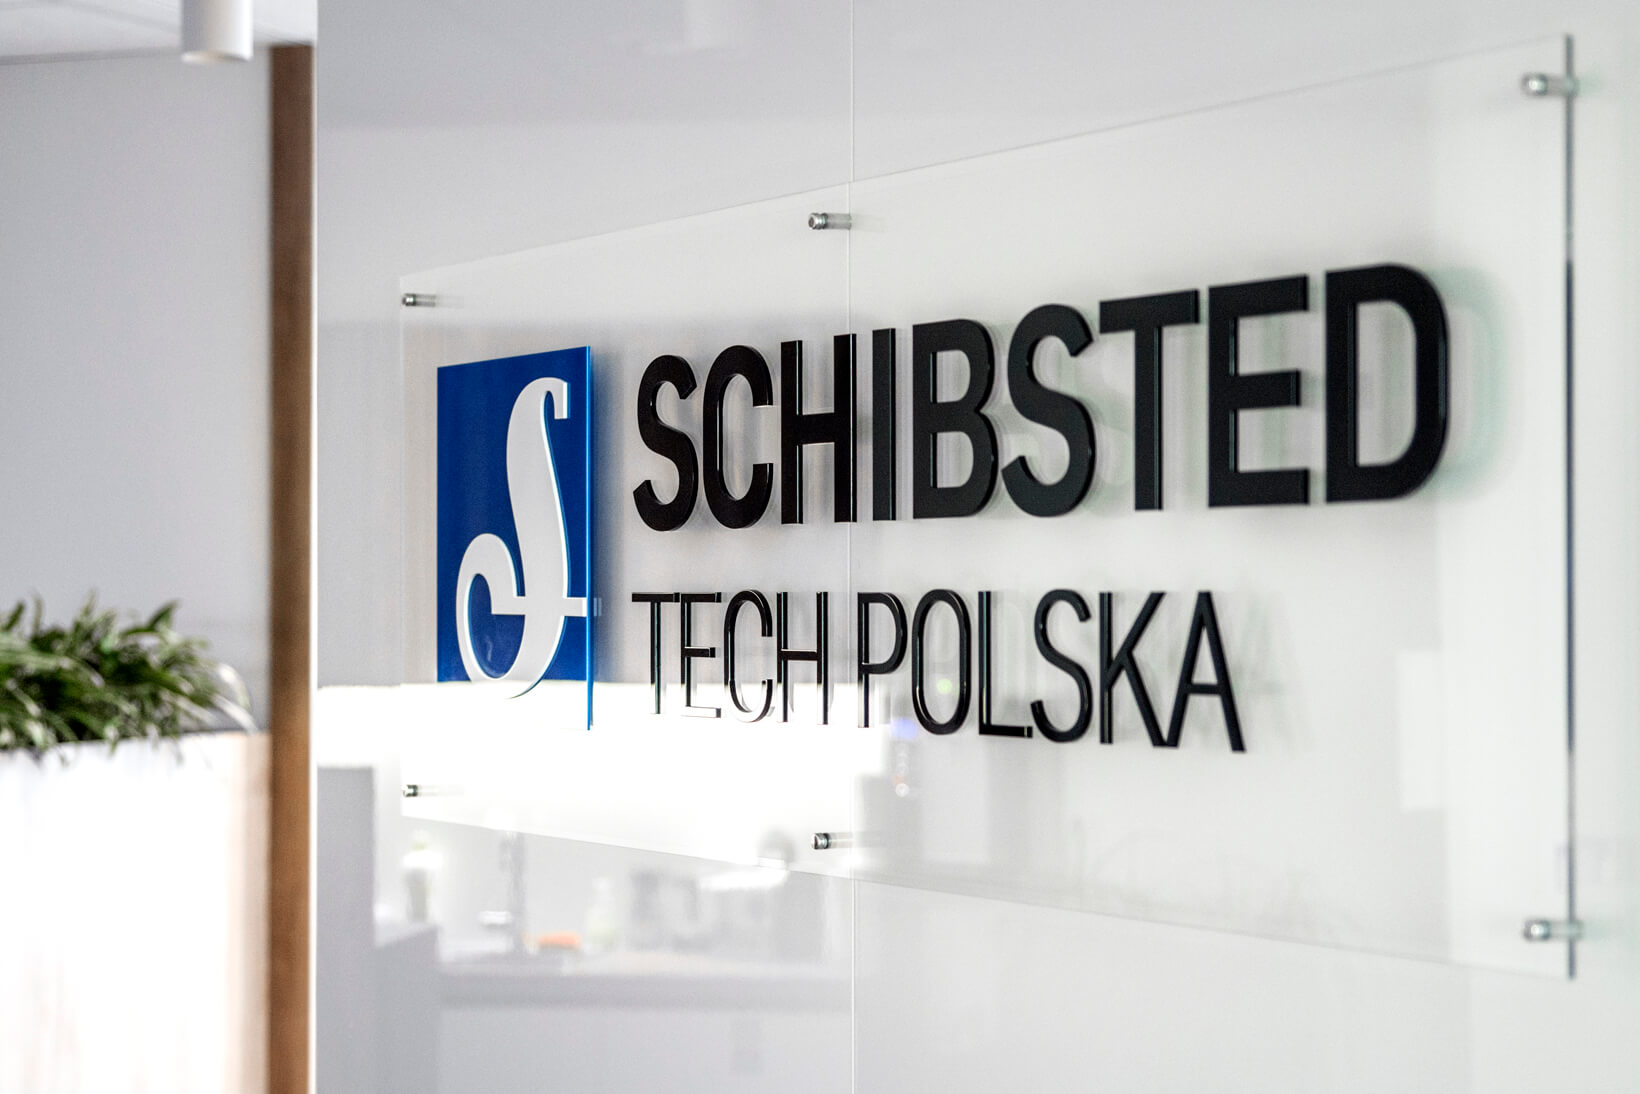 Schibsted Tech Pologne  - Schibsted Tech Poland - logo et lettres 3D en plexiglas sur les intercalaires de la réception